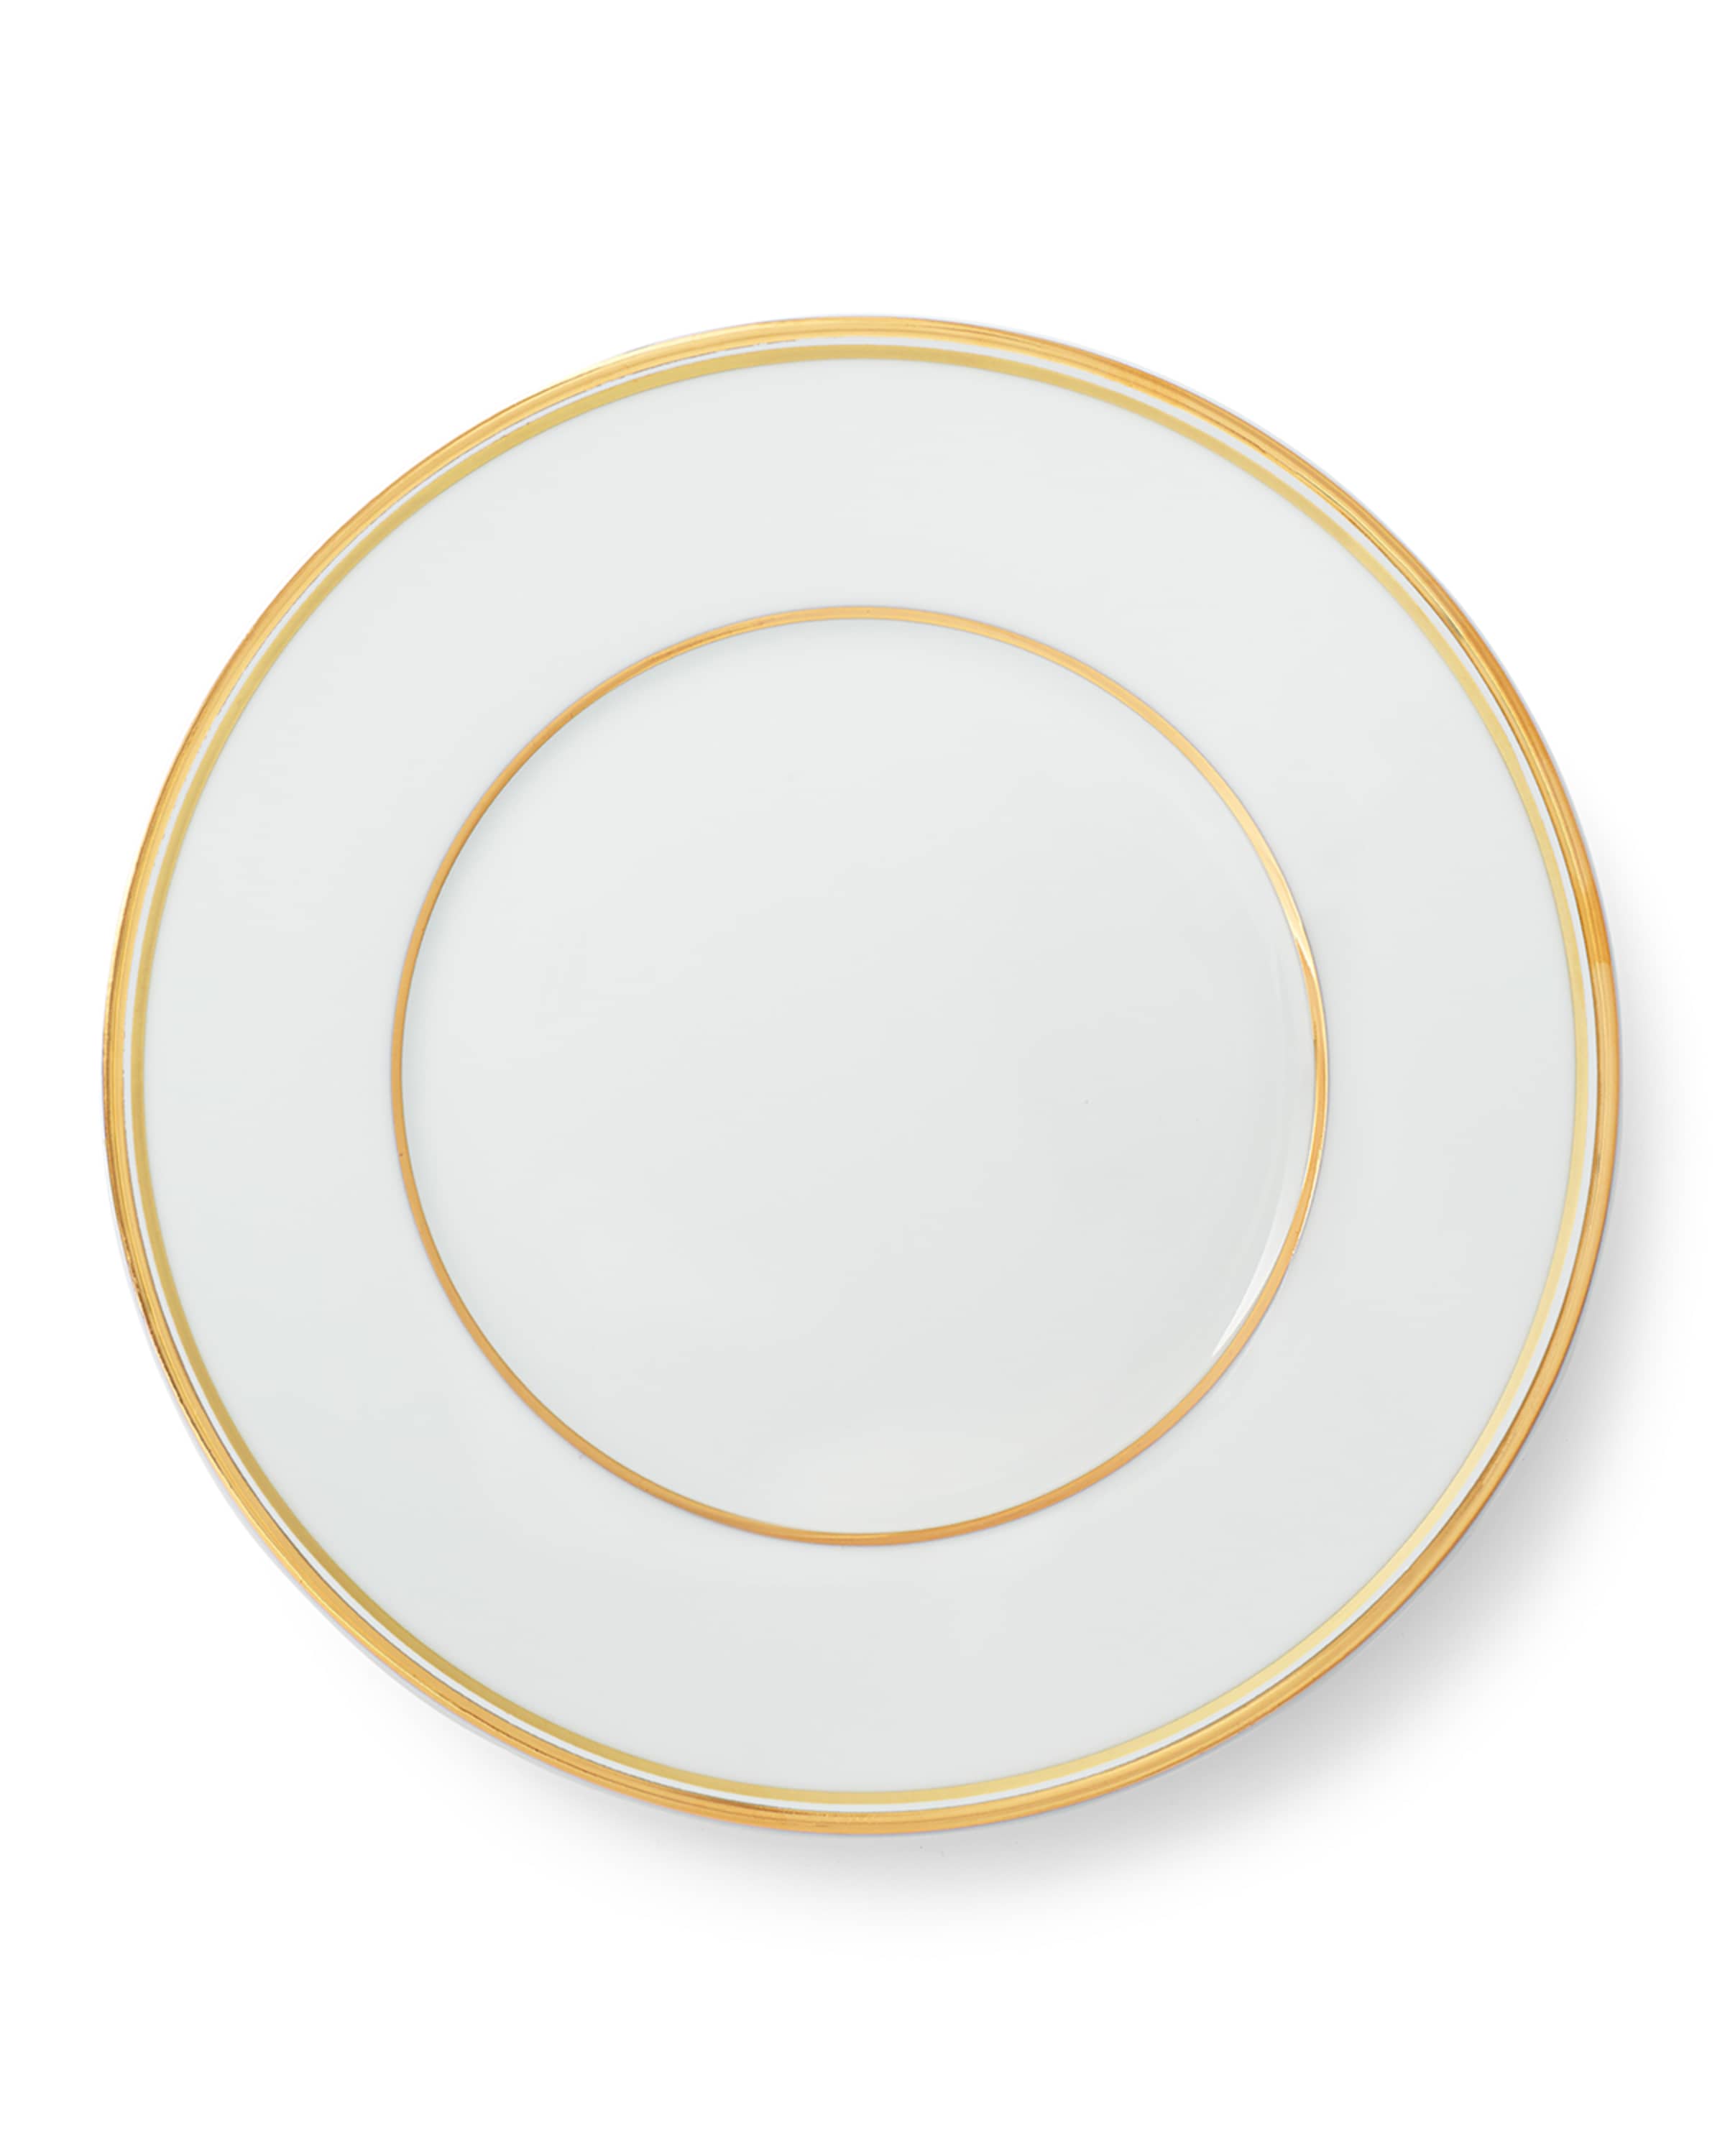 Ralph Lauren Home Wilshire Salad Plate, Gold